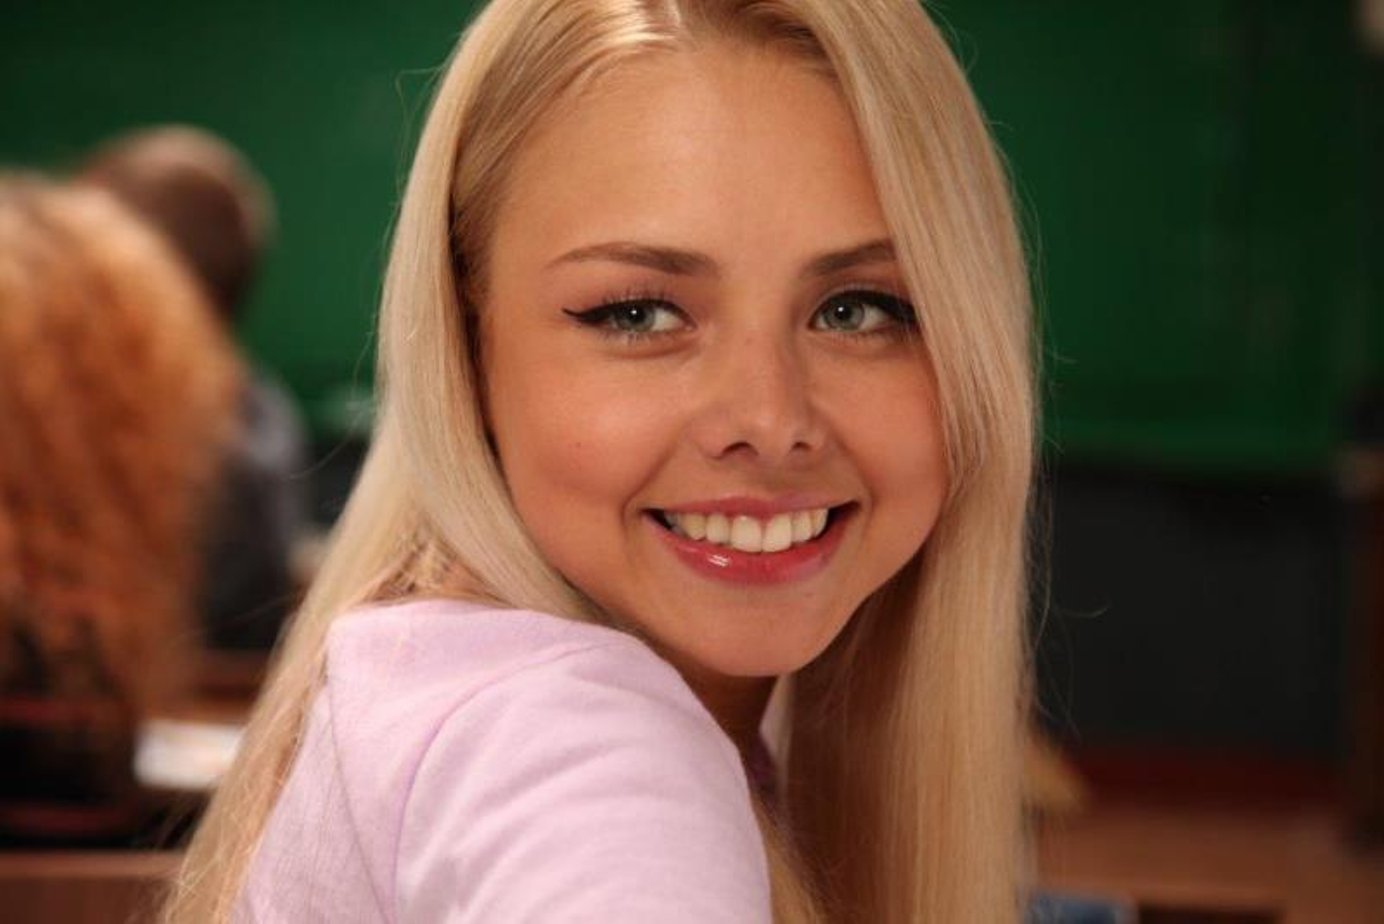 Российские актрисы молодые фото и фамилии блондинки